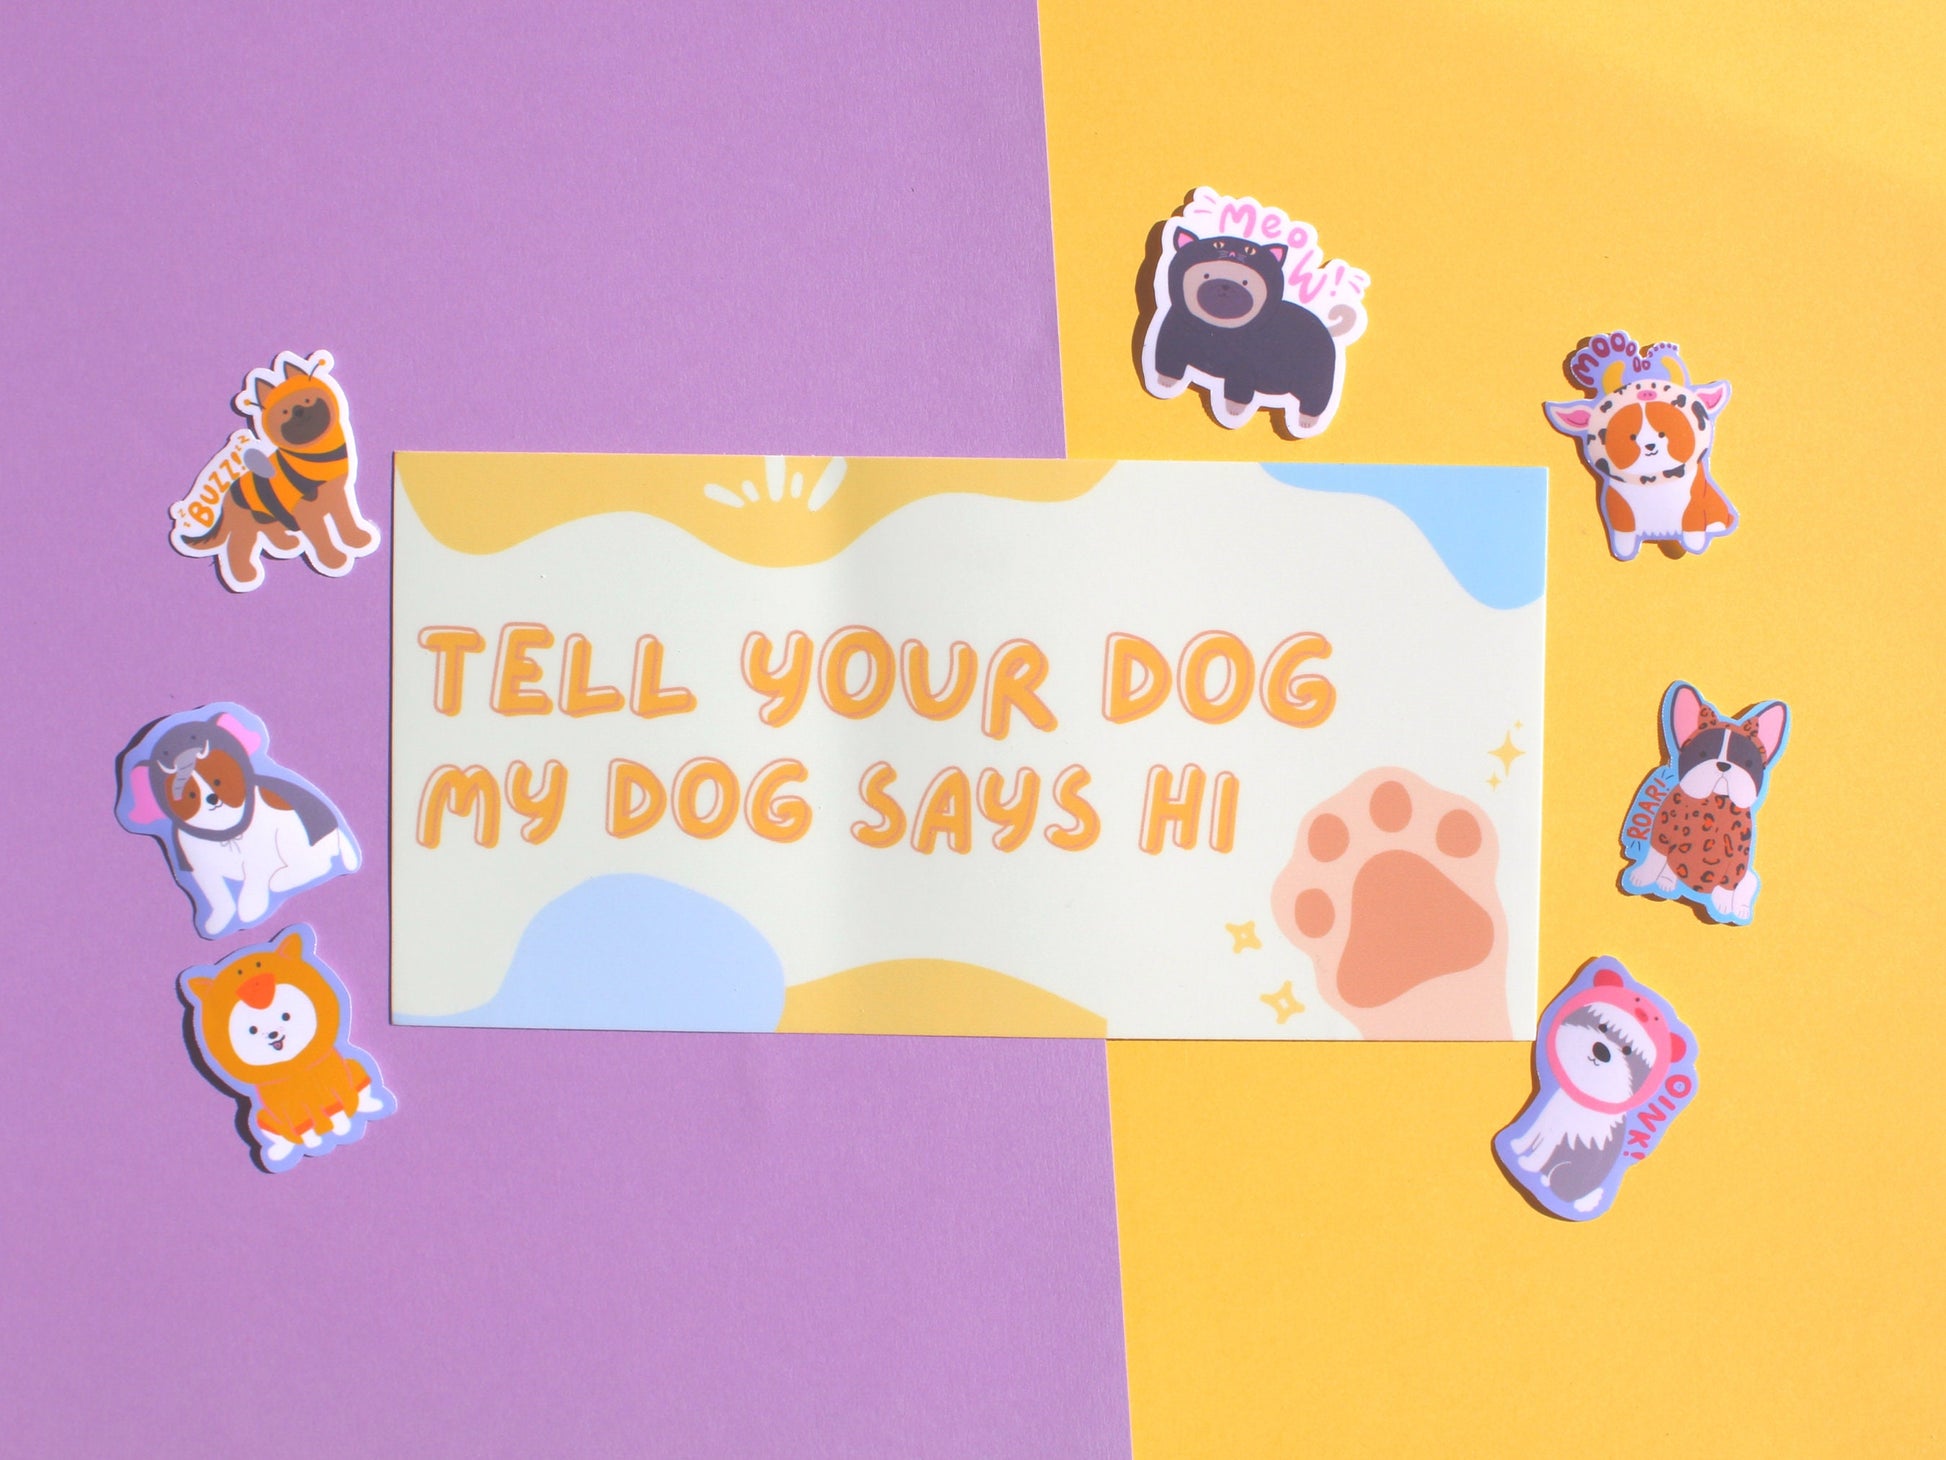 Tell Your Dog My Dog Says Hi Bumper Sticker | Funny Bumper Sticker | Cute Car Decals